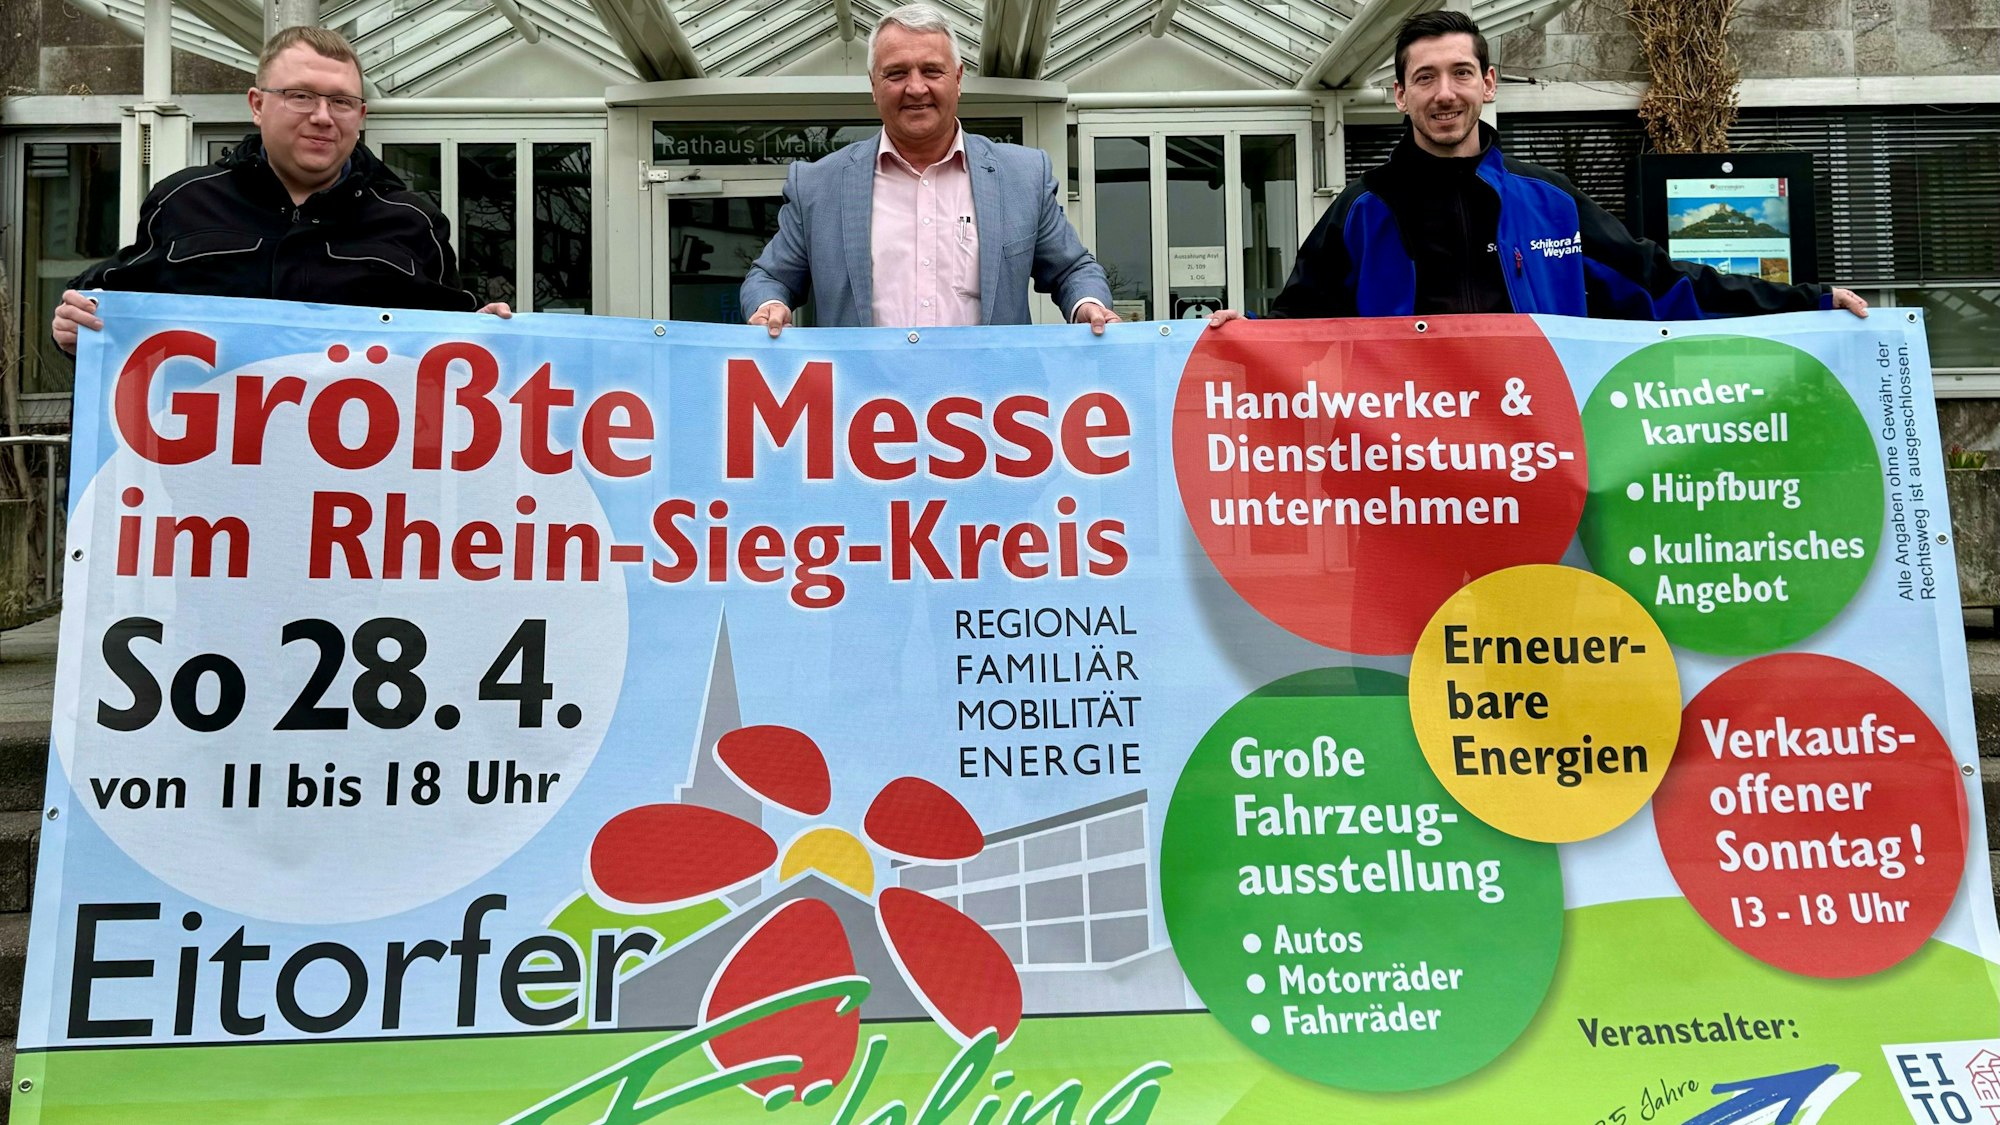 Vor dem Rathaus präsentieren (v.l.) Thorsten Thewes, Rainer Viehof und Marc Bogs das Plakat.